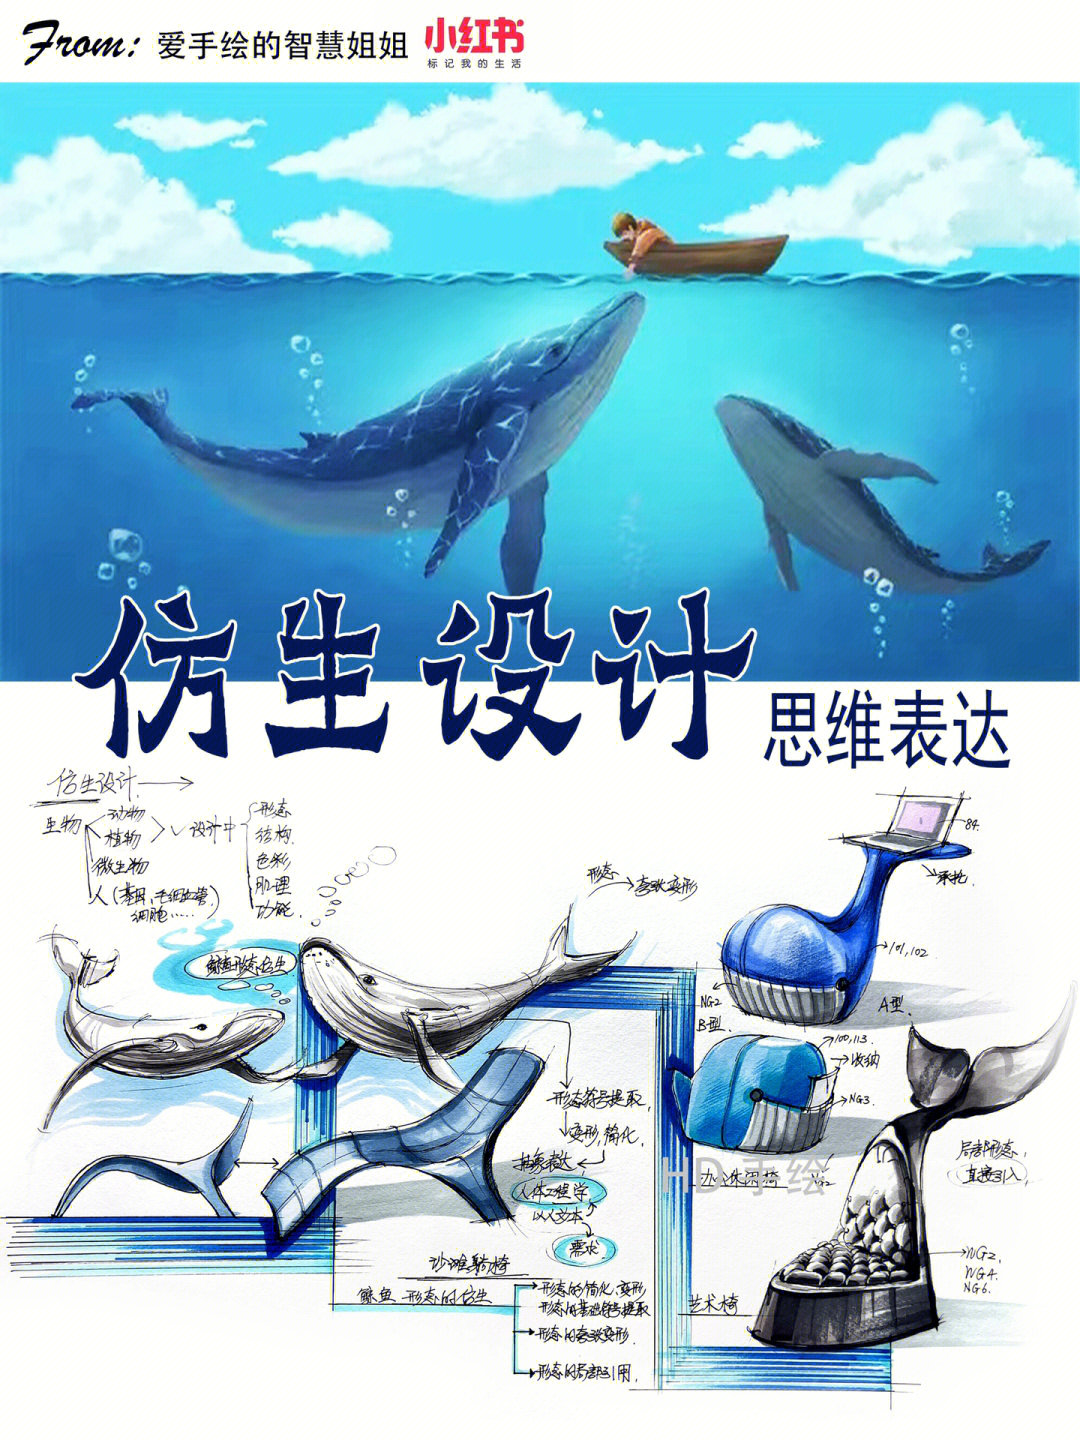 鲸鱼仿生设计手绘图片